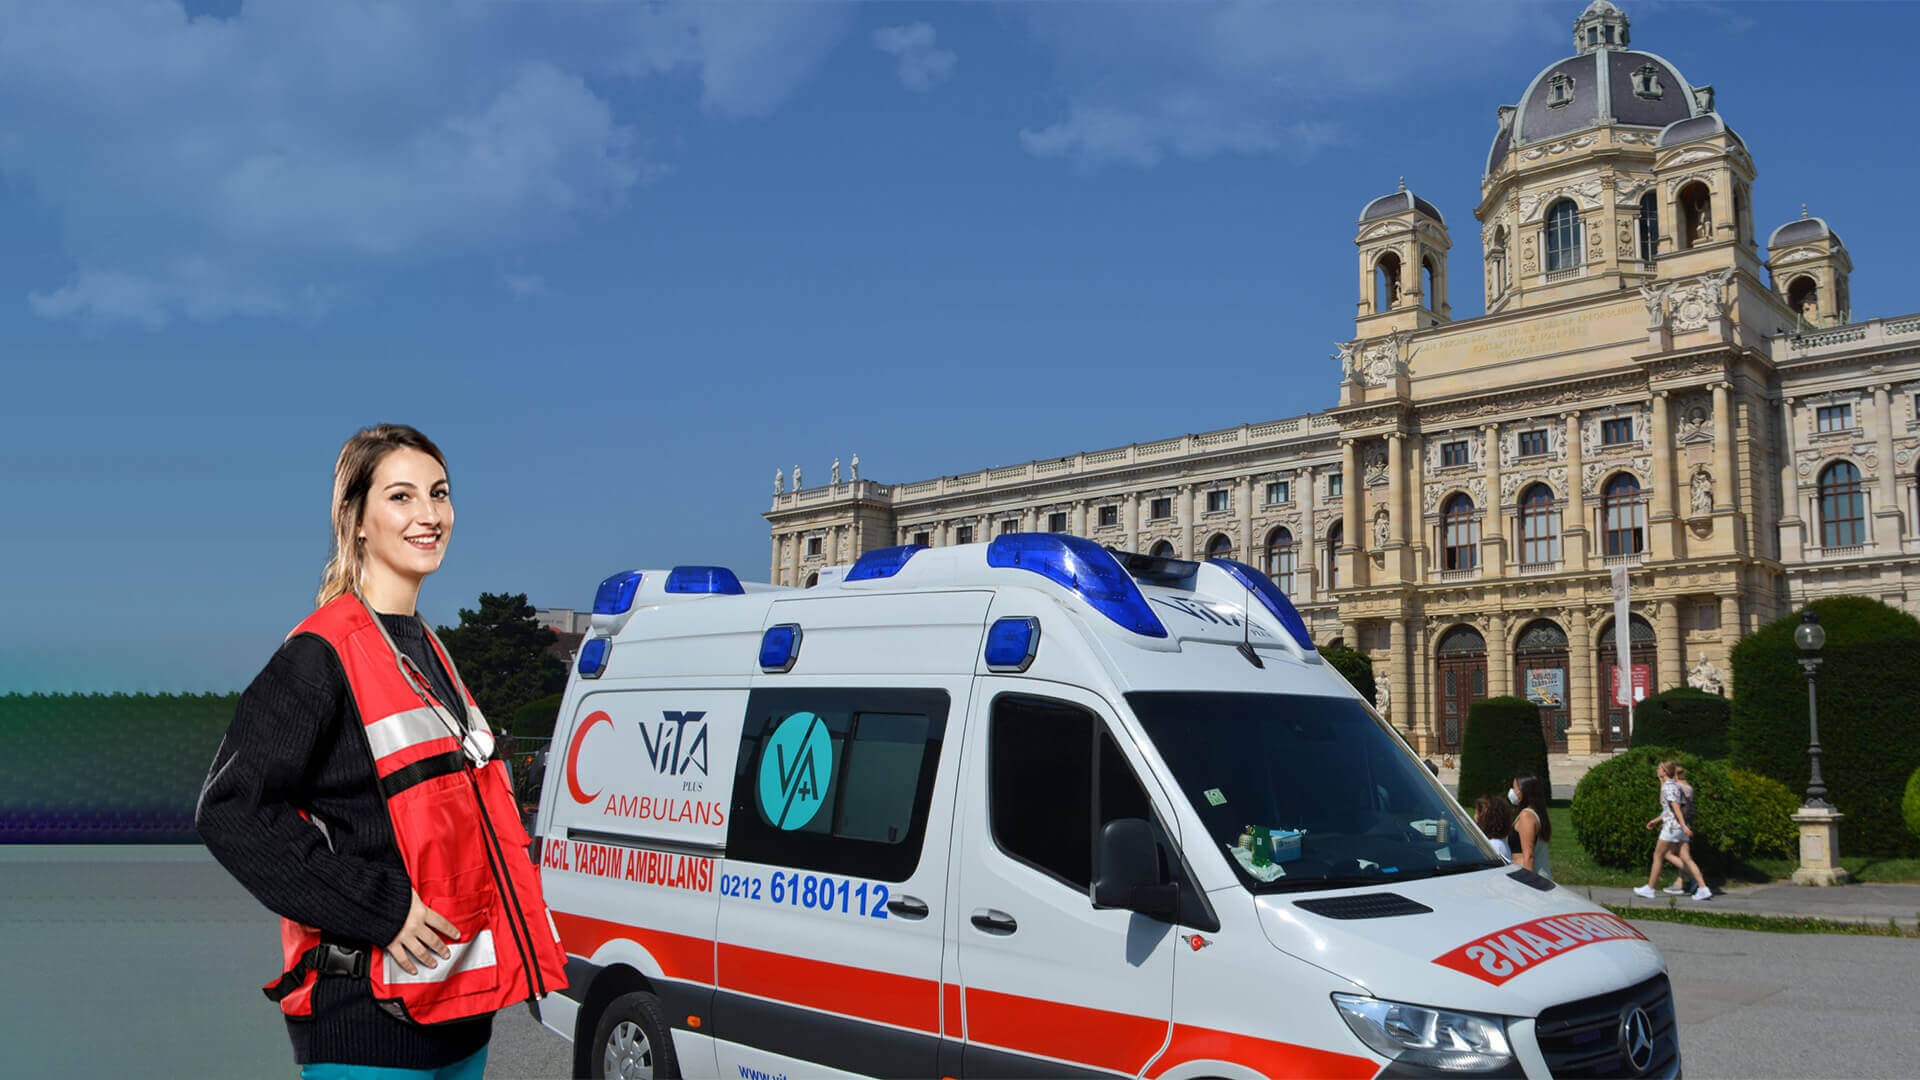 özel ambulans, istanbul özel ambulans, şehirlerarası ambulans, uluslararası ambulans, ambulansimvar